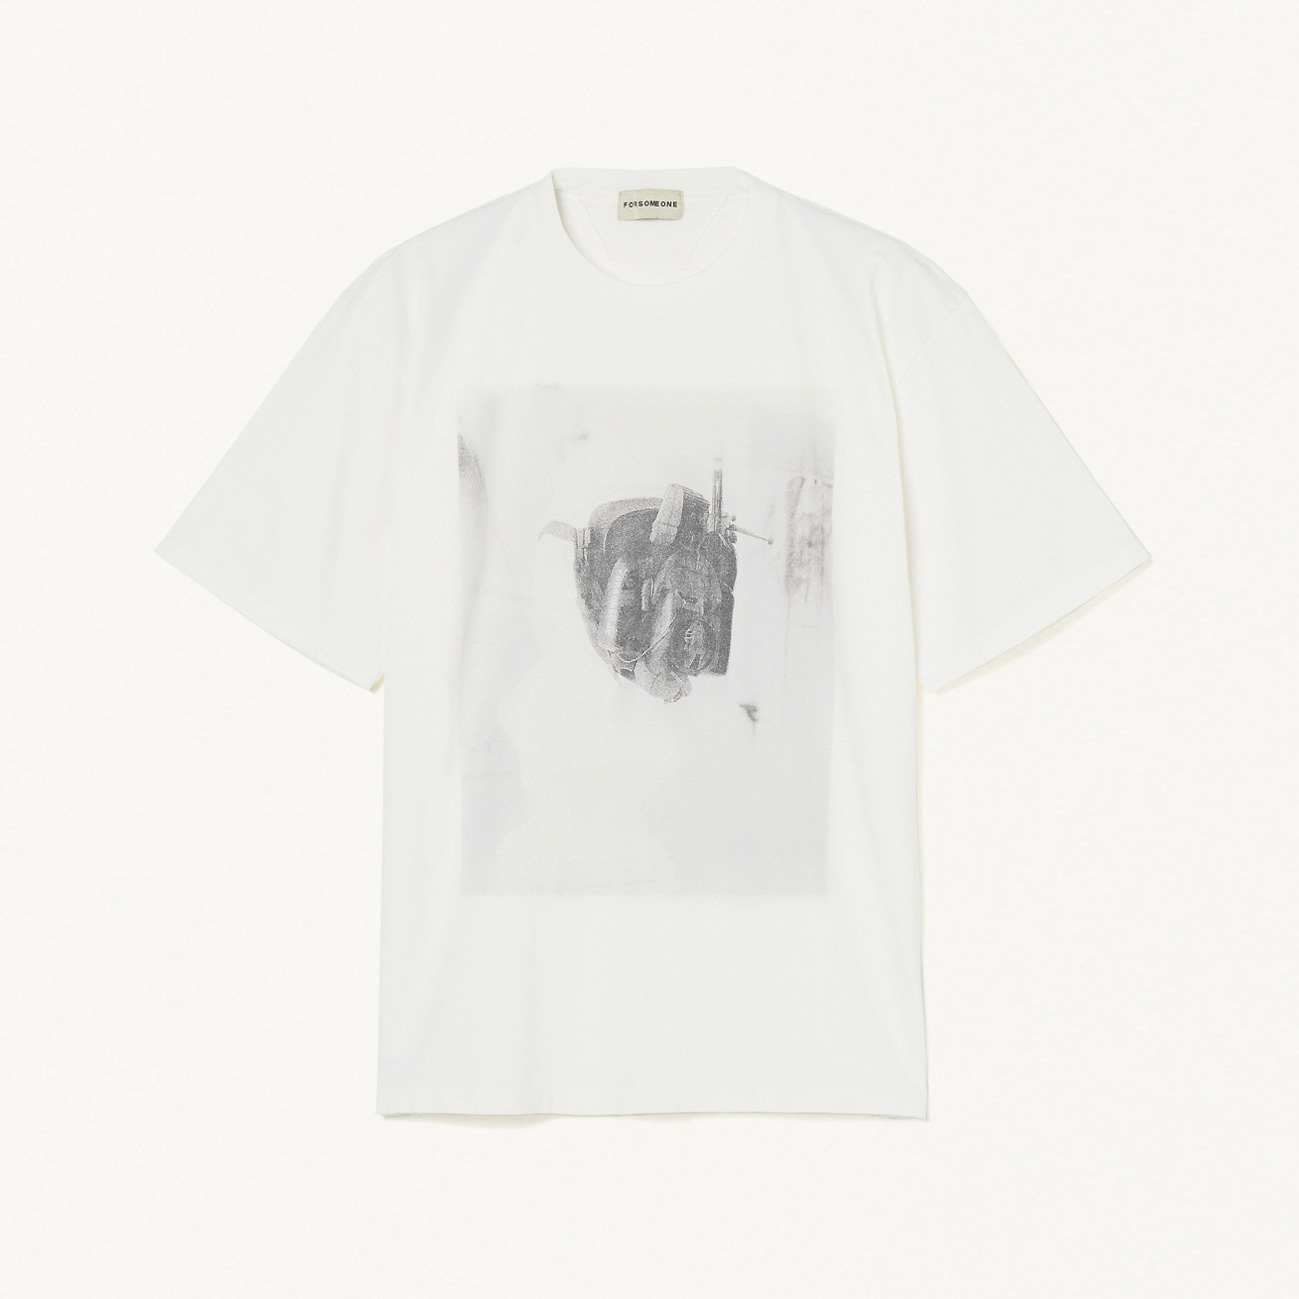 FORSOMEONEが新進気鋭のアーティスト佃弘樹とのコラボTシャツを4/16(金)発売。